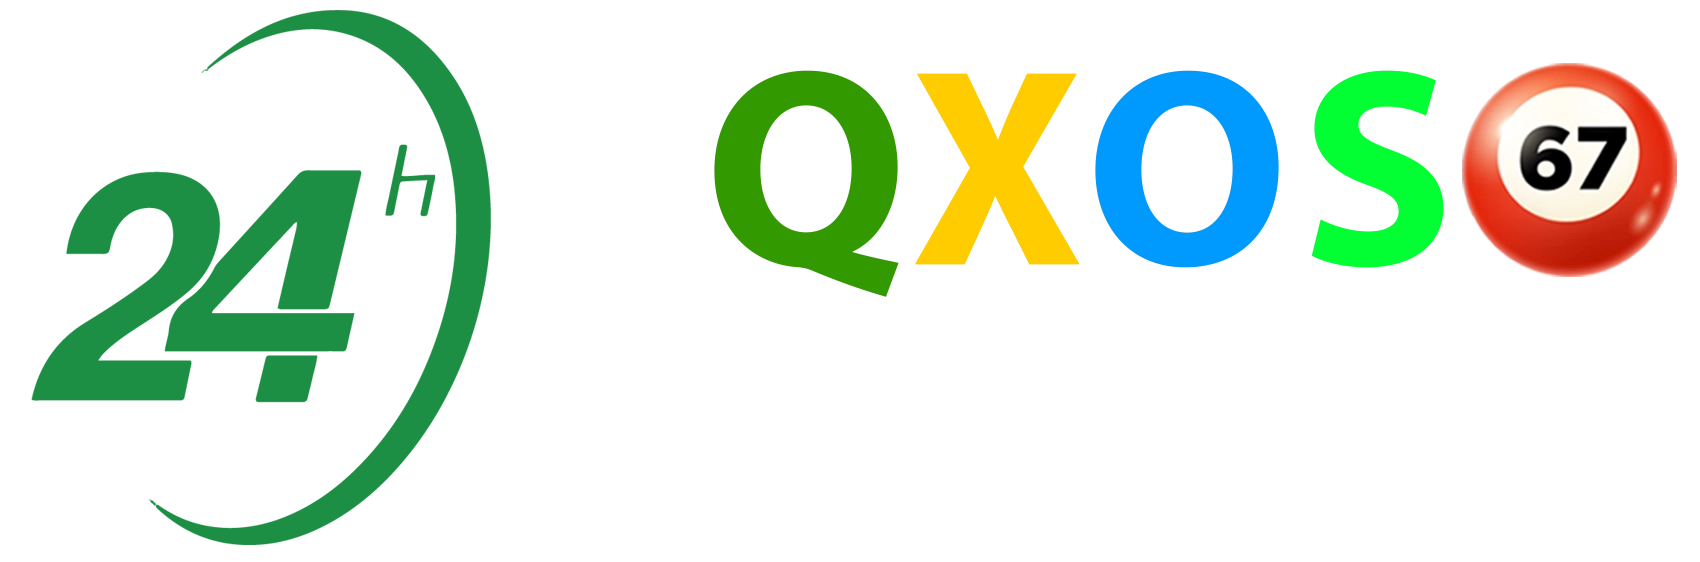 kqxoso24hcom-logo